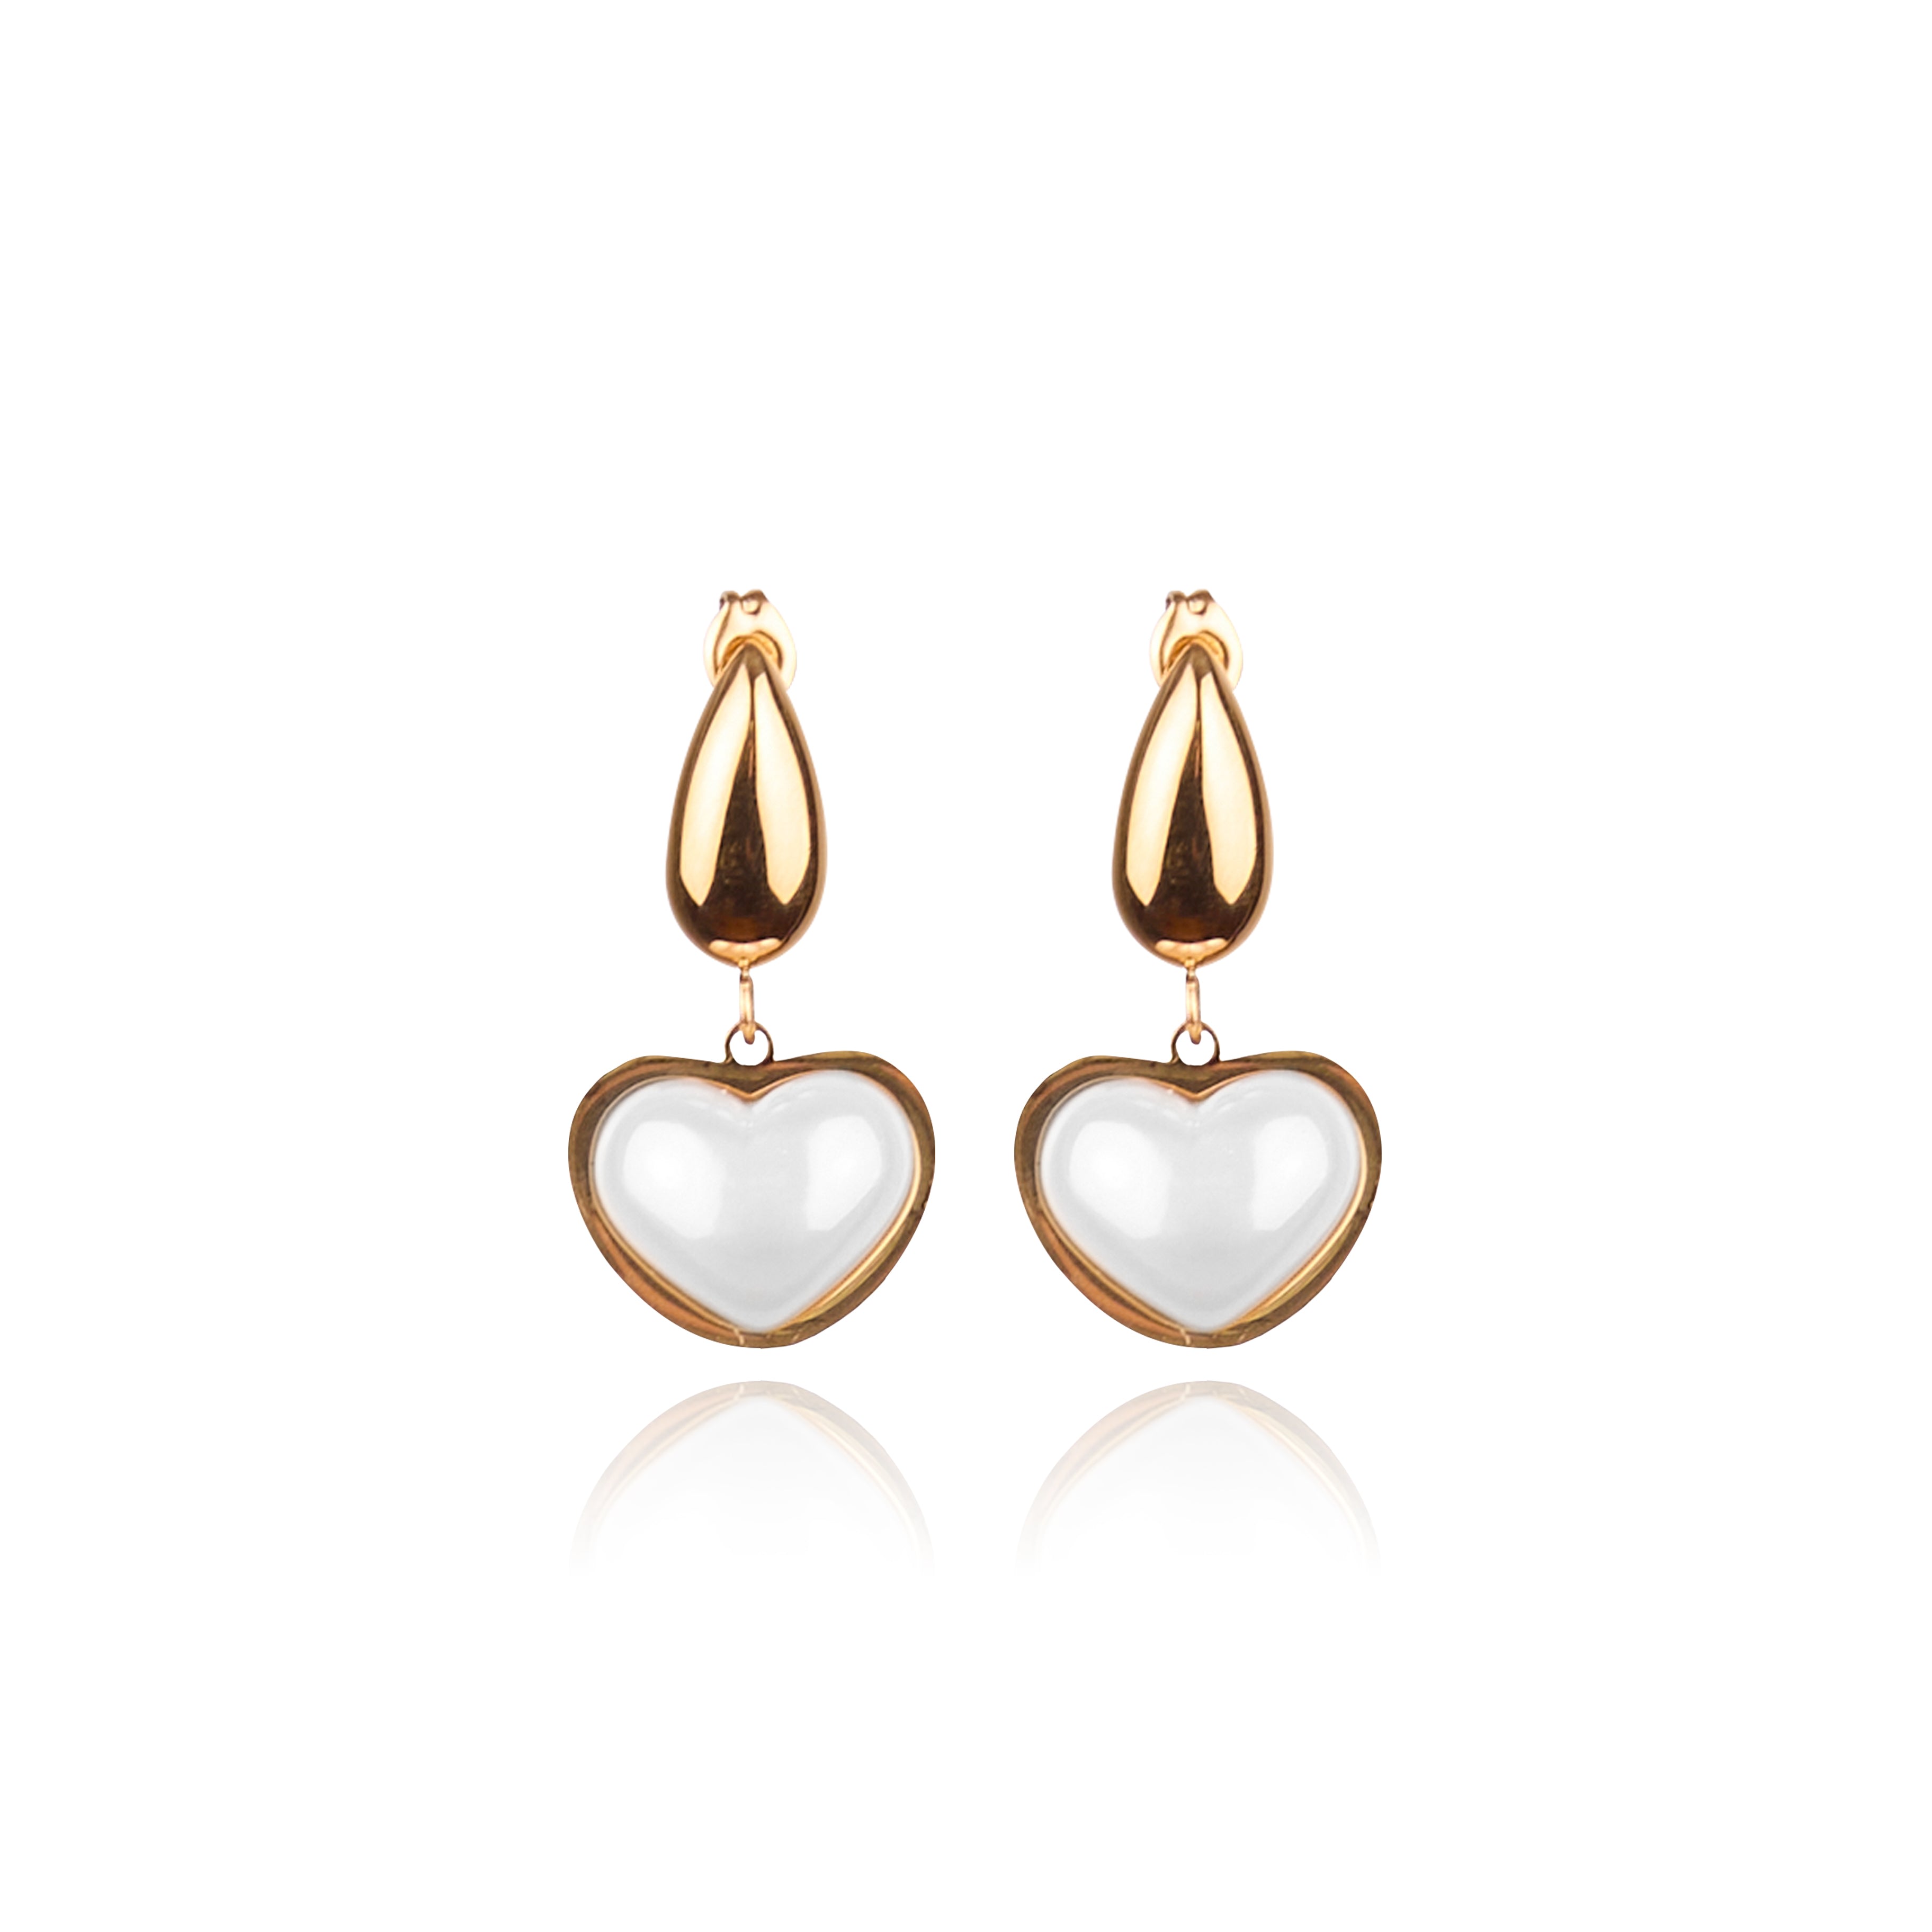 Tseatjewelry Women's Lucky Gold Plated Statement Earrings